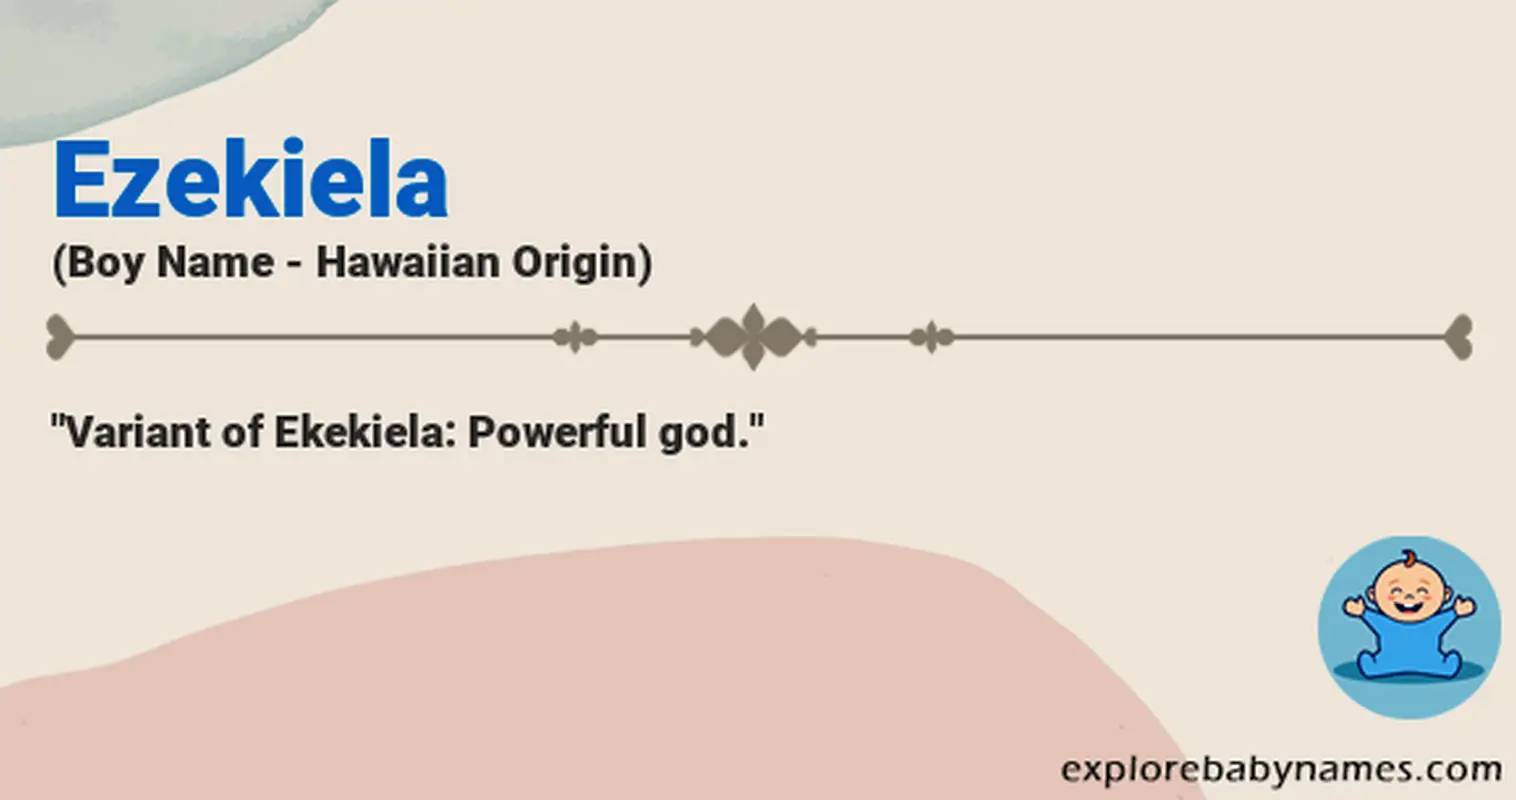 Meaning of Ezekiela